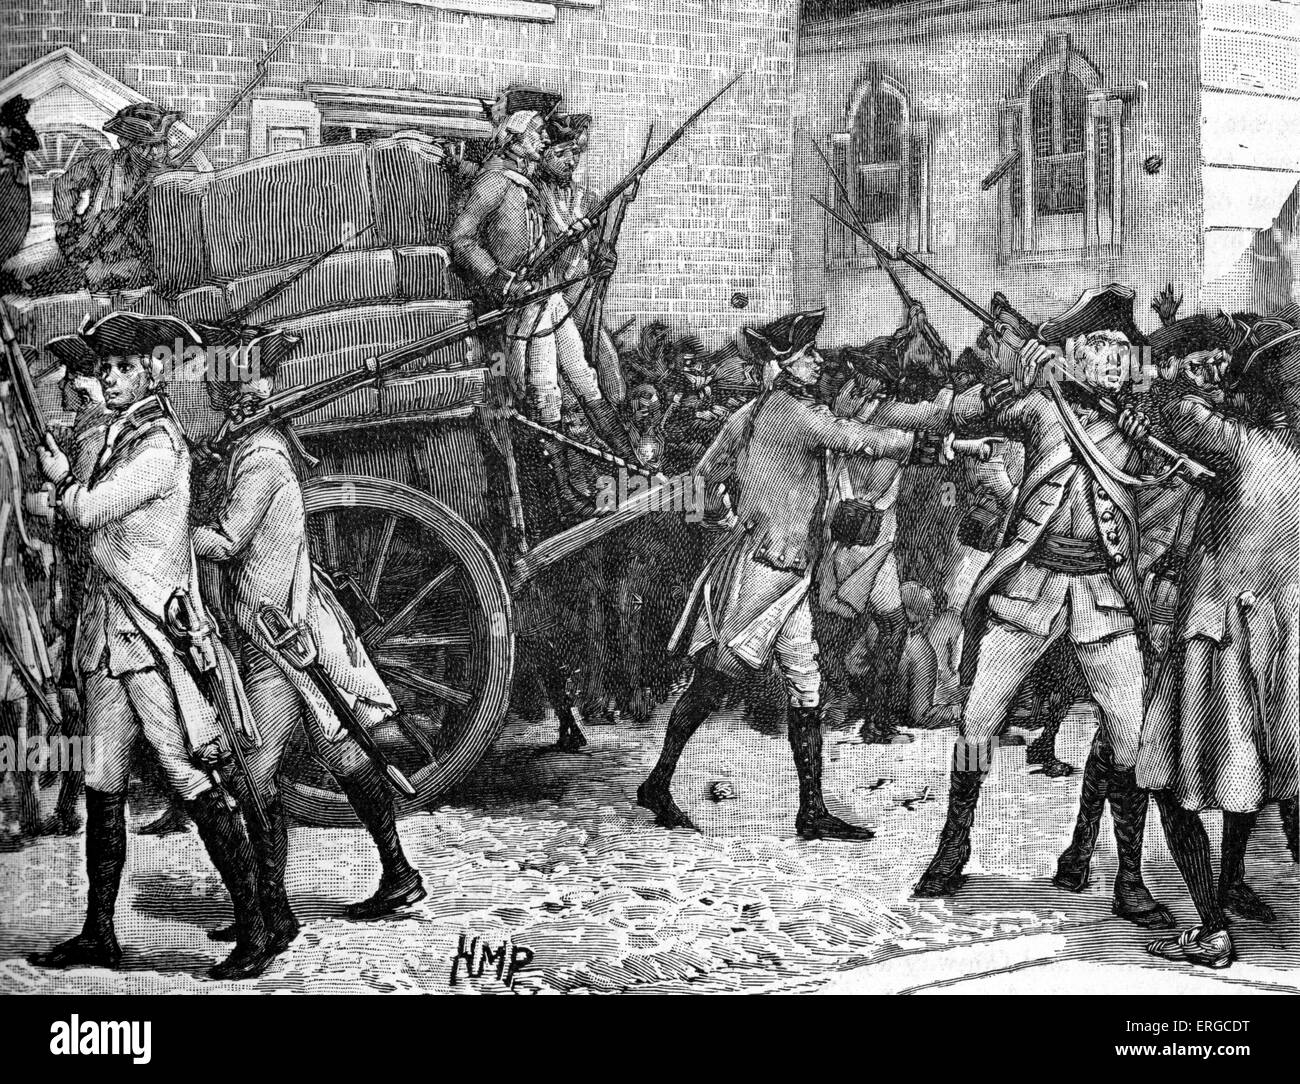 Pour l'escorte armée de papier estampé, New York, 1765. Stamp Act de 1765 imposée par l'impôt direct du gouvernement britannique sur l'American Banque D'Images